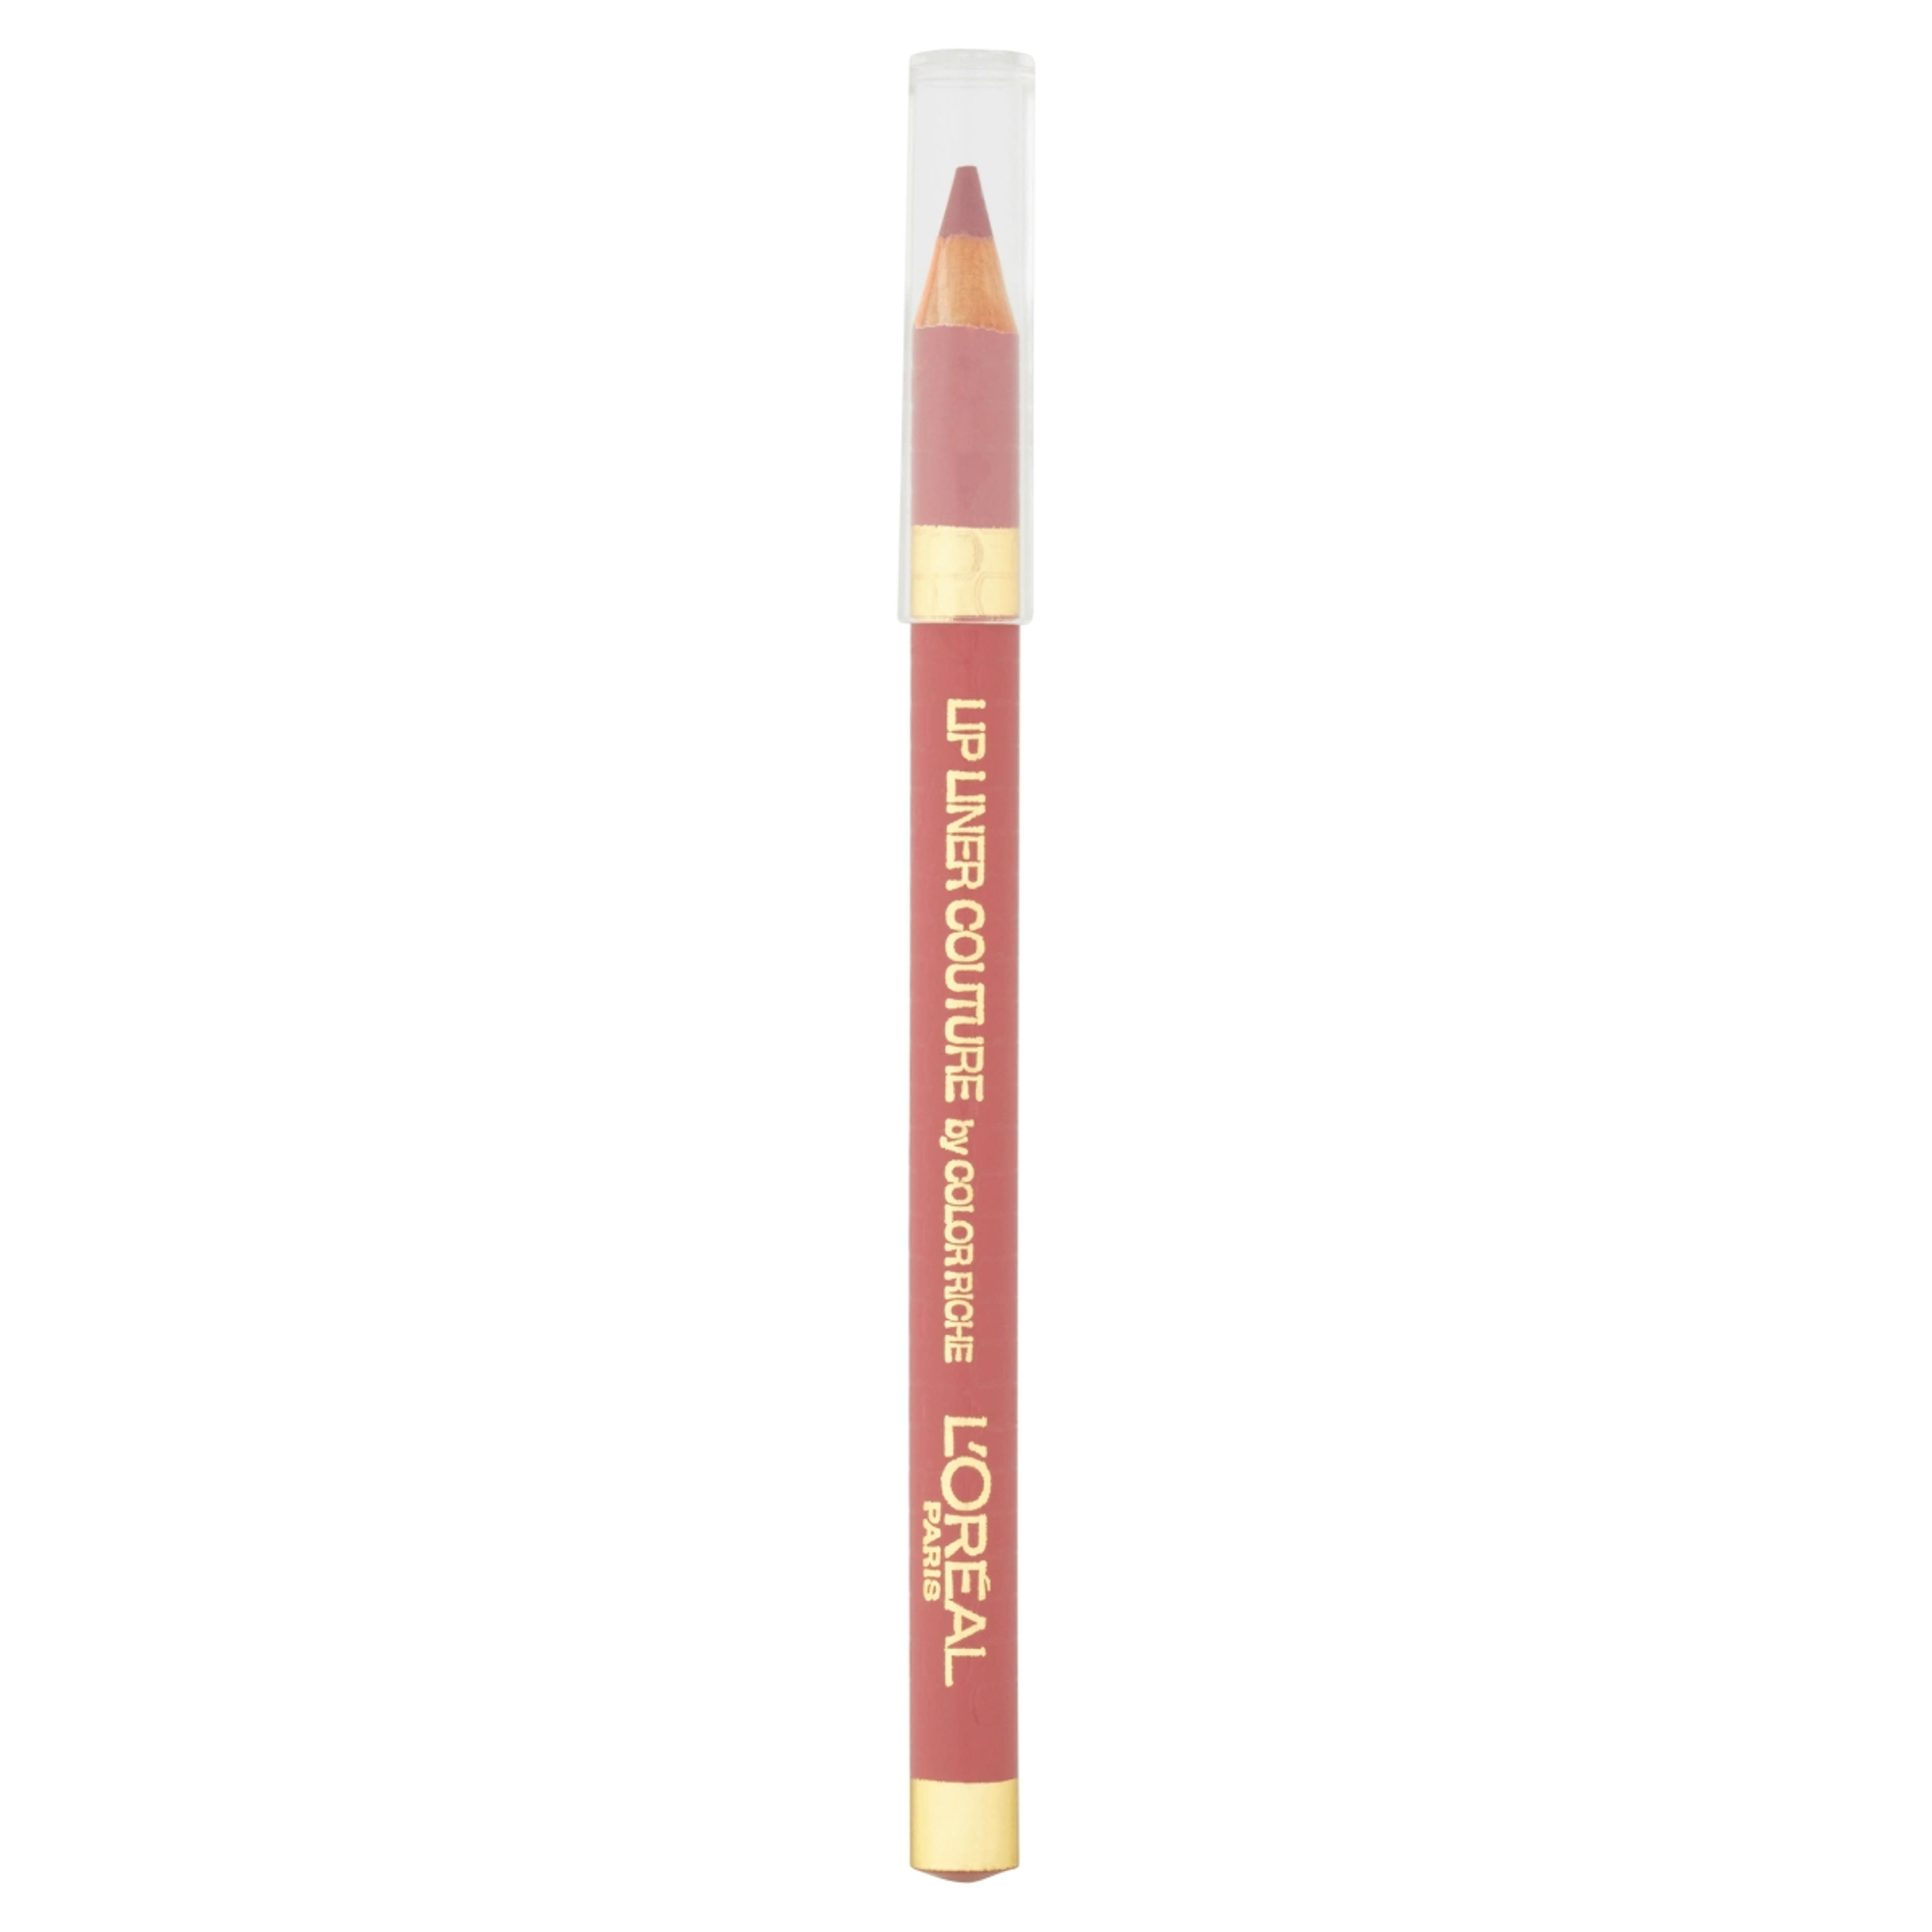 L'Oréal Paris Color Riche ajakkontúr ceruza /630 - 1 db-1